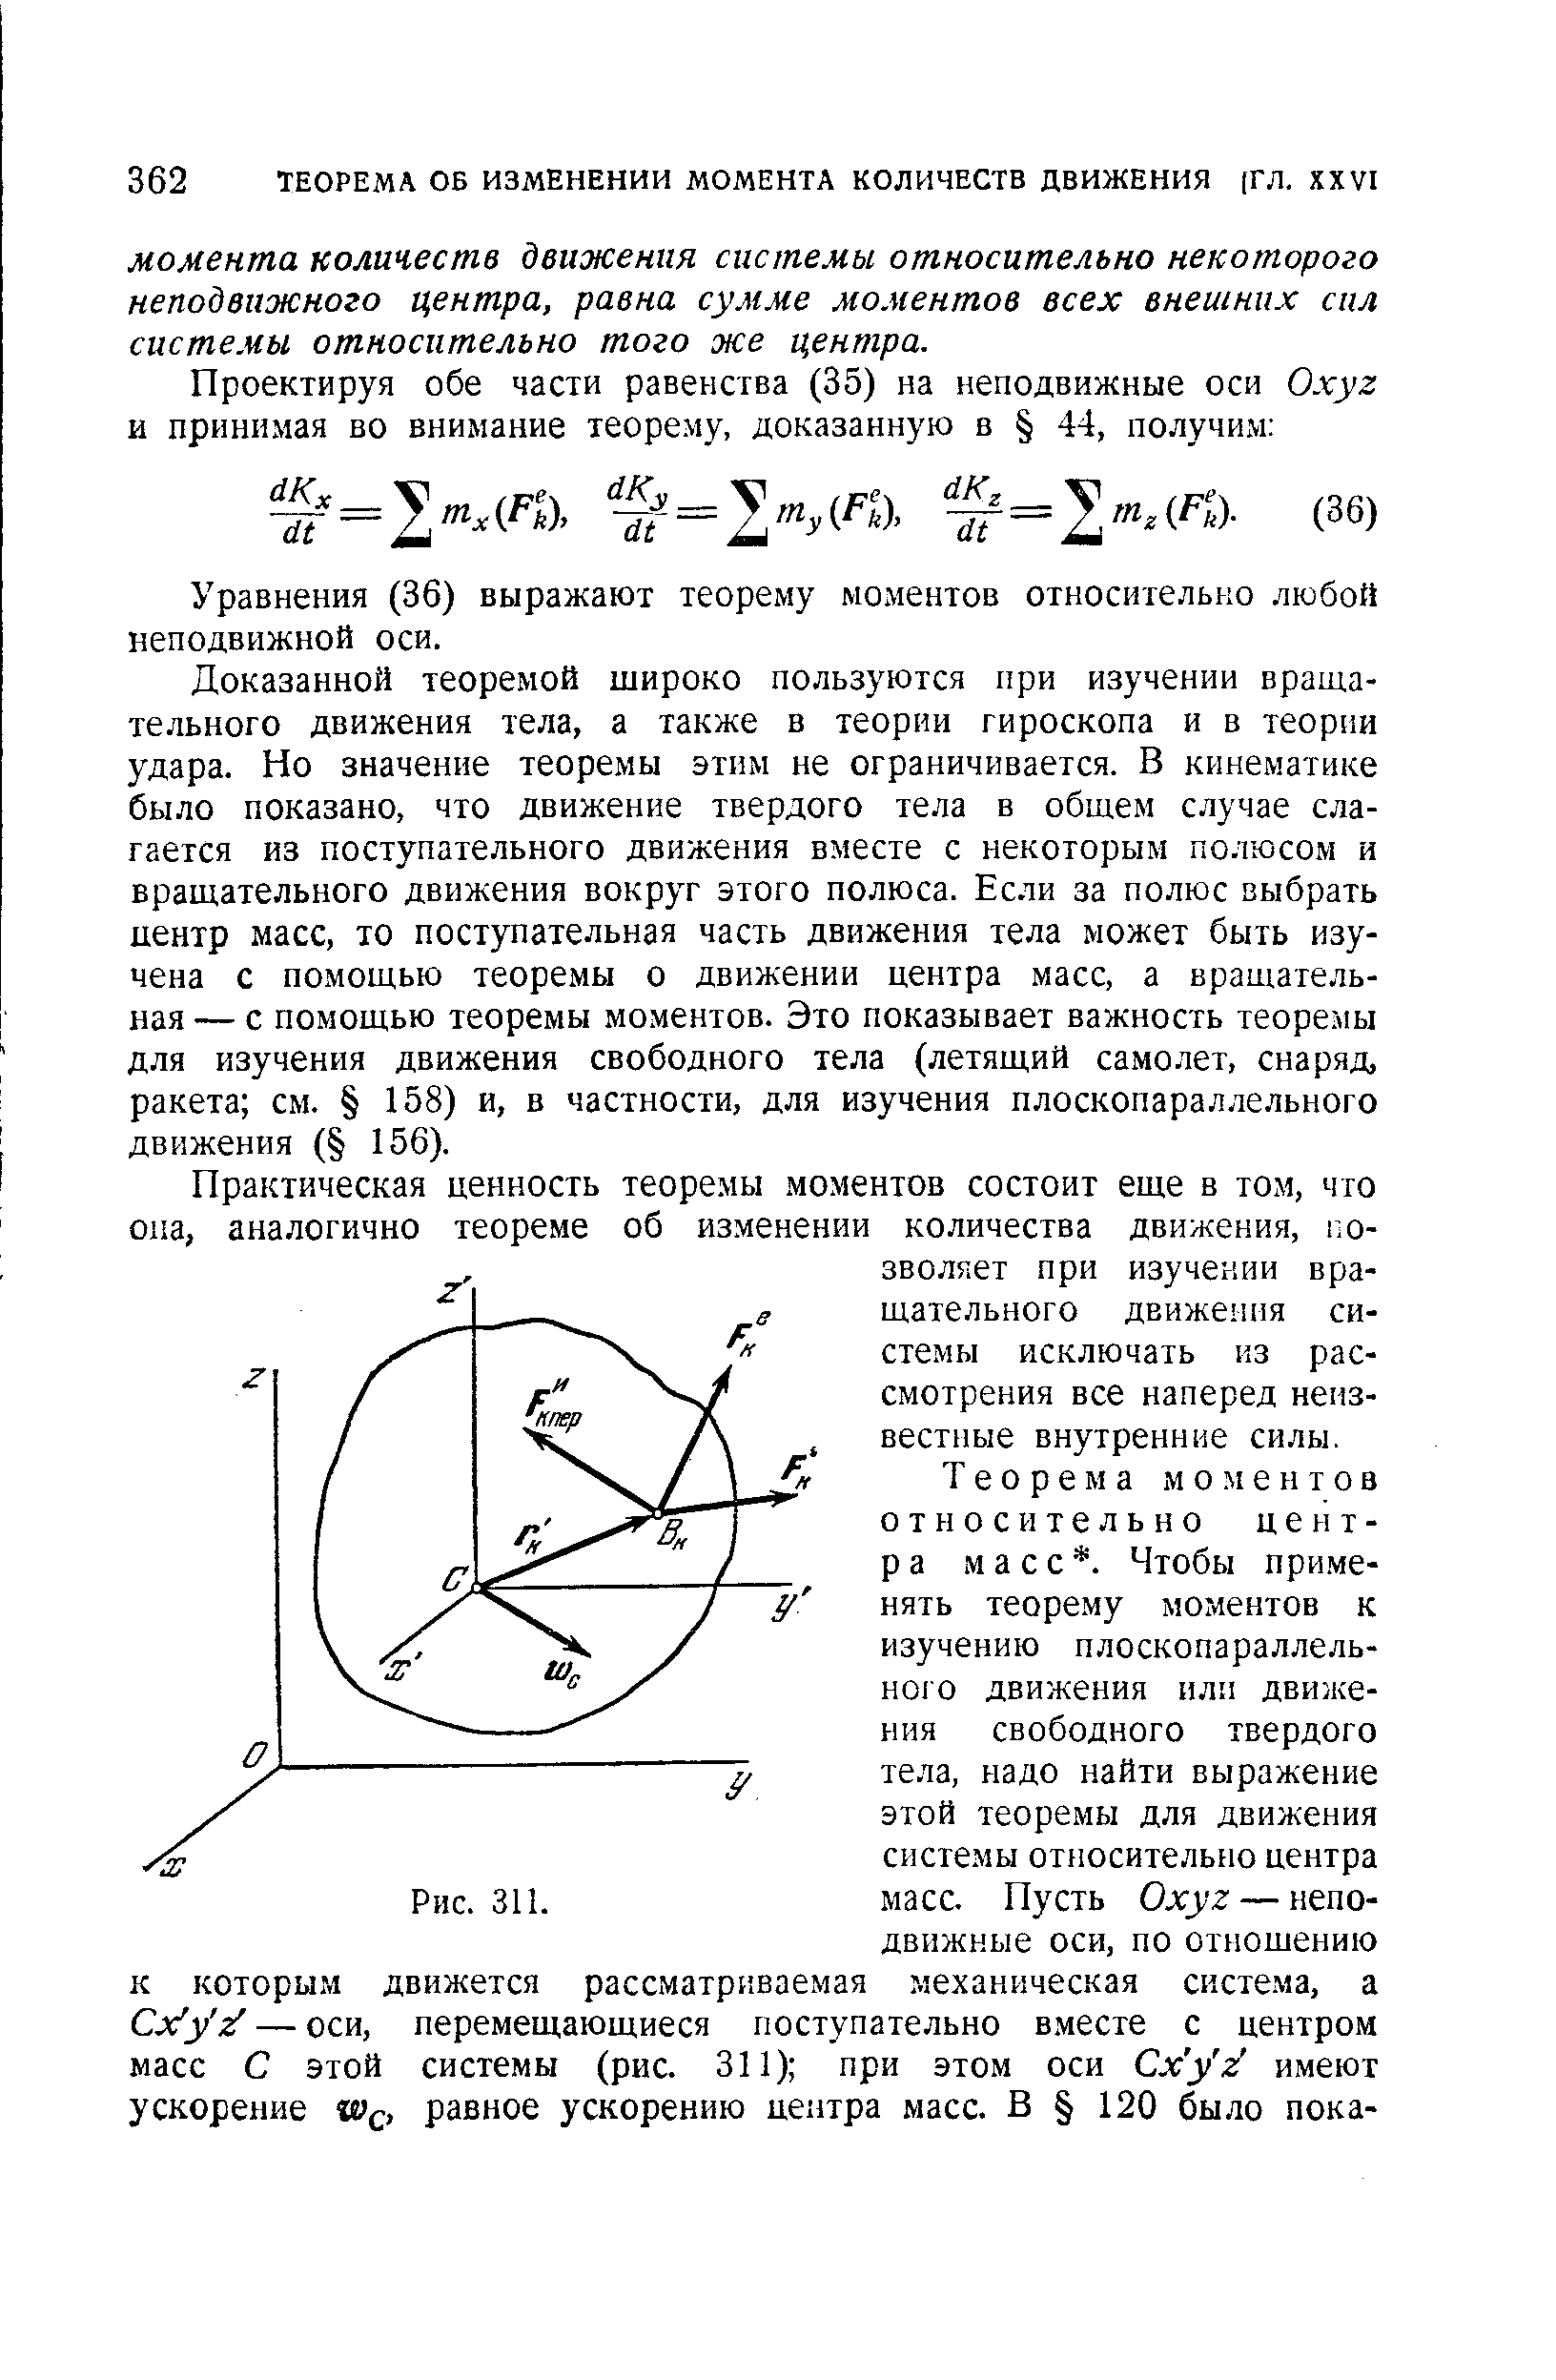 Уравнения (36) выражают теорему моментов относительно любой неподвижной оси.
